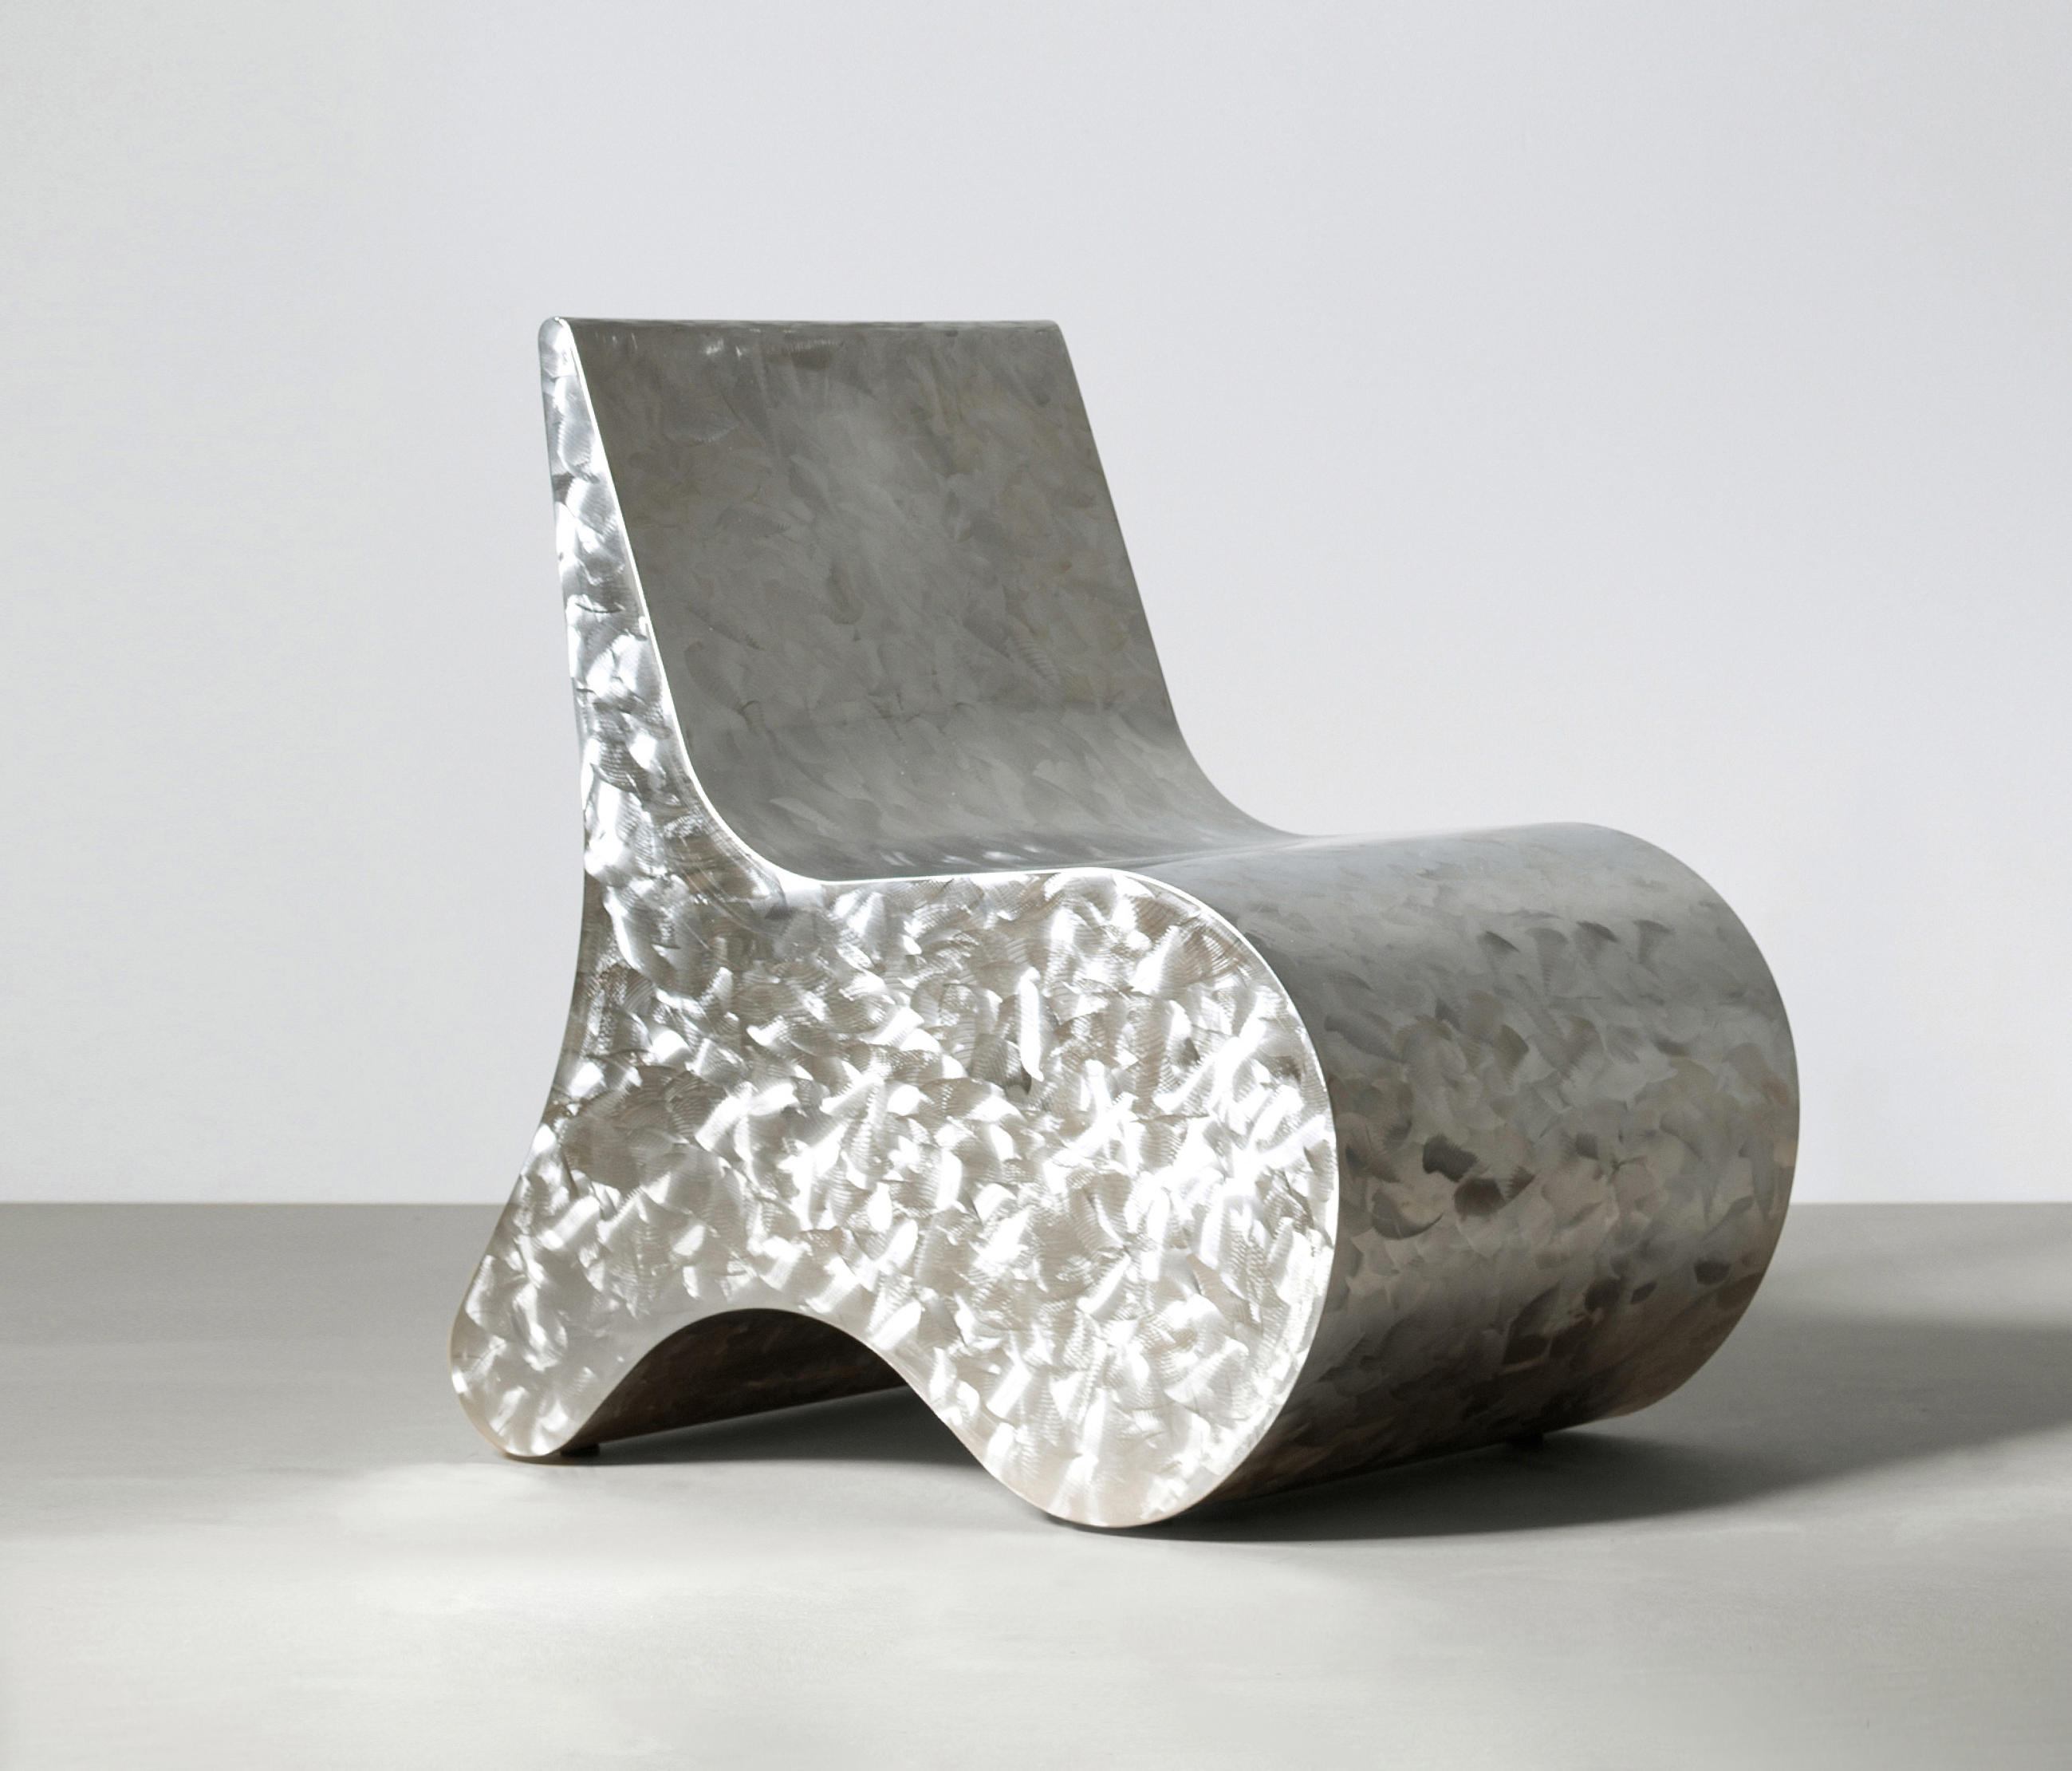 Seating Sculpture by Studio Benkert